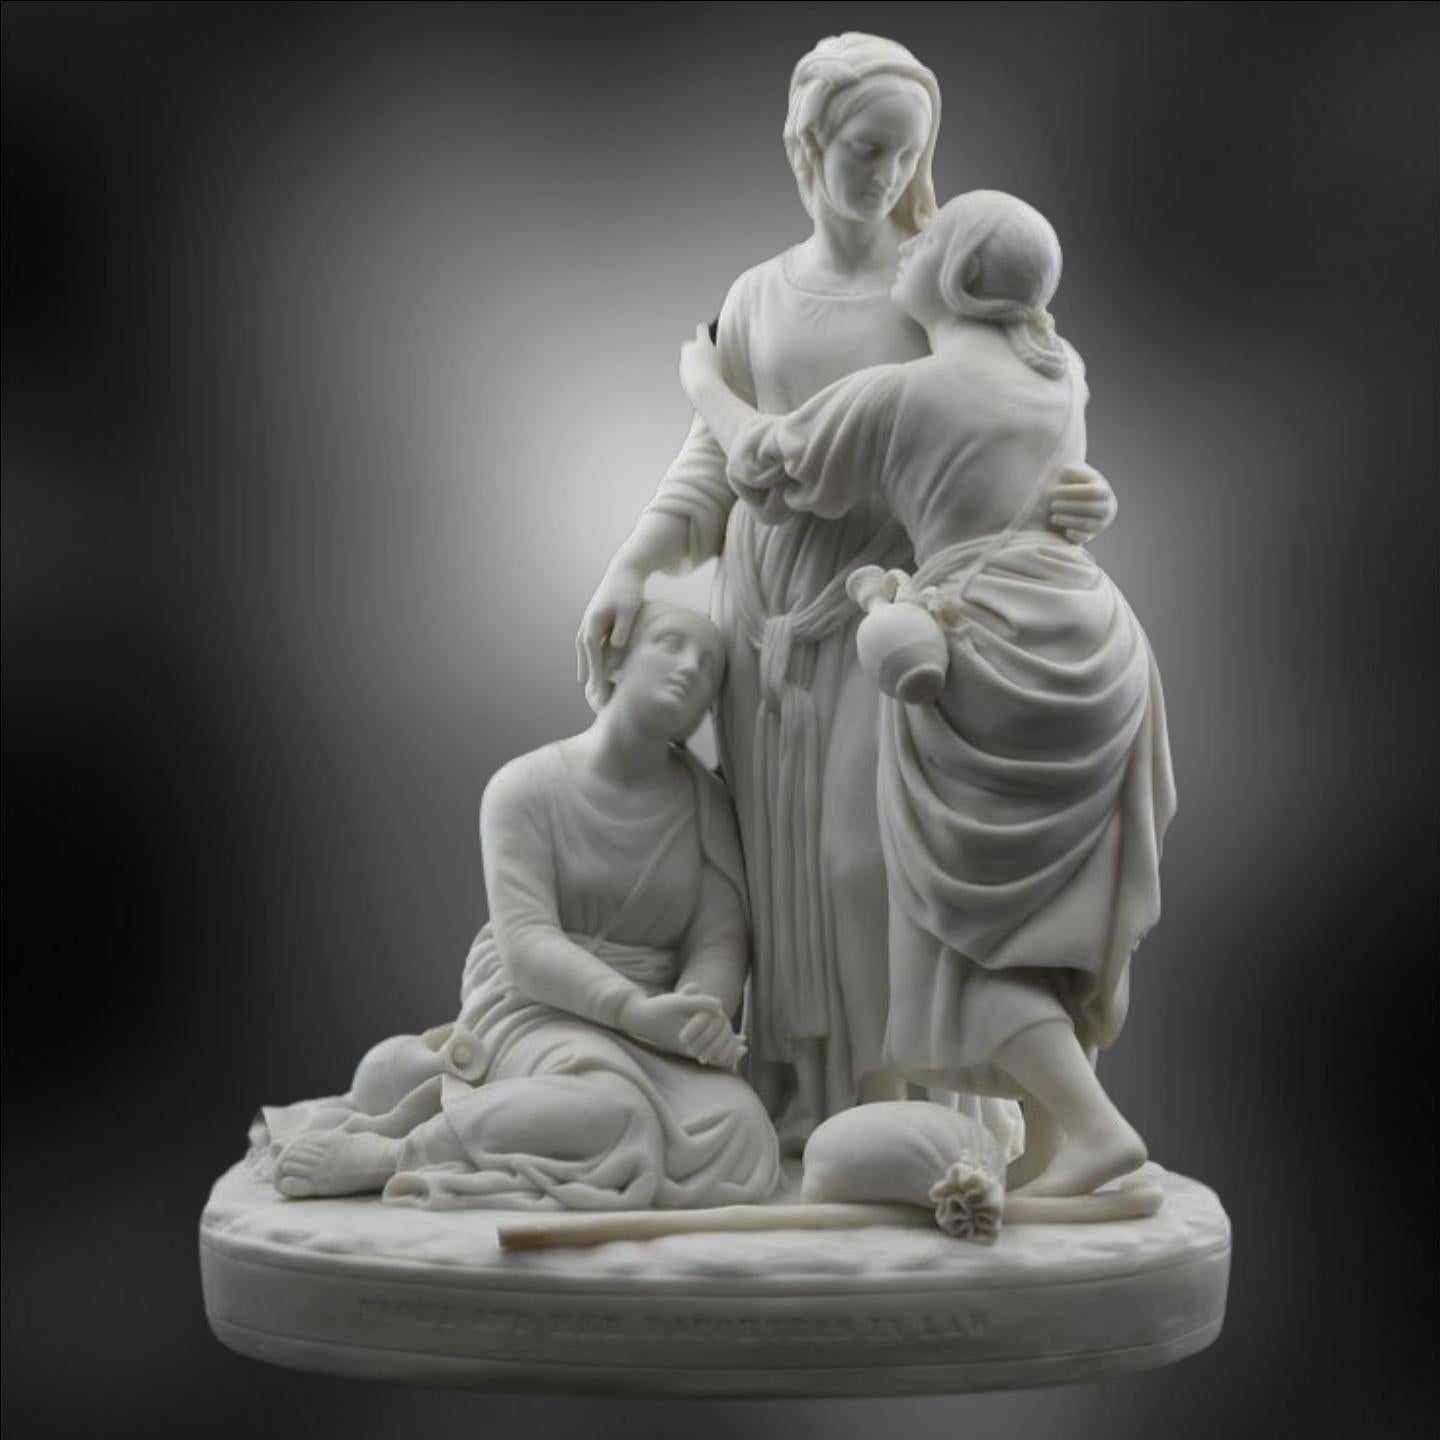 L'un des grands groupes de figurines parianes.

Le parian est une forme de poterie formulée pour simuler le marbre, et il le fait très bien. Elle a été largement utilisée à la fin du XIXe siècle pour créer des sculptures d'apparence authentique,